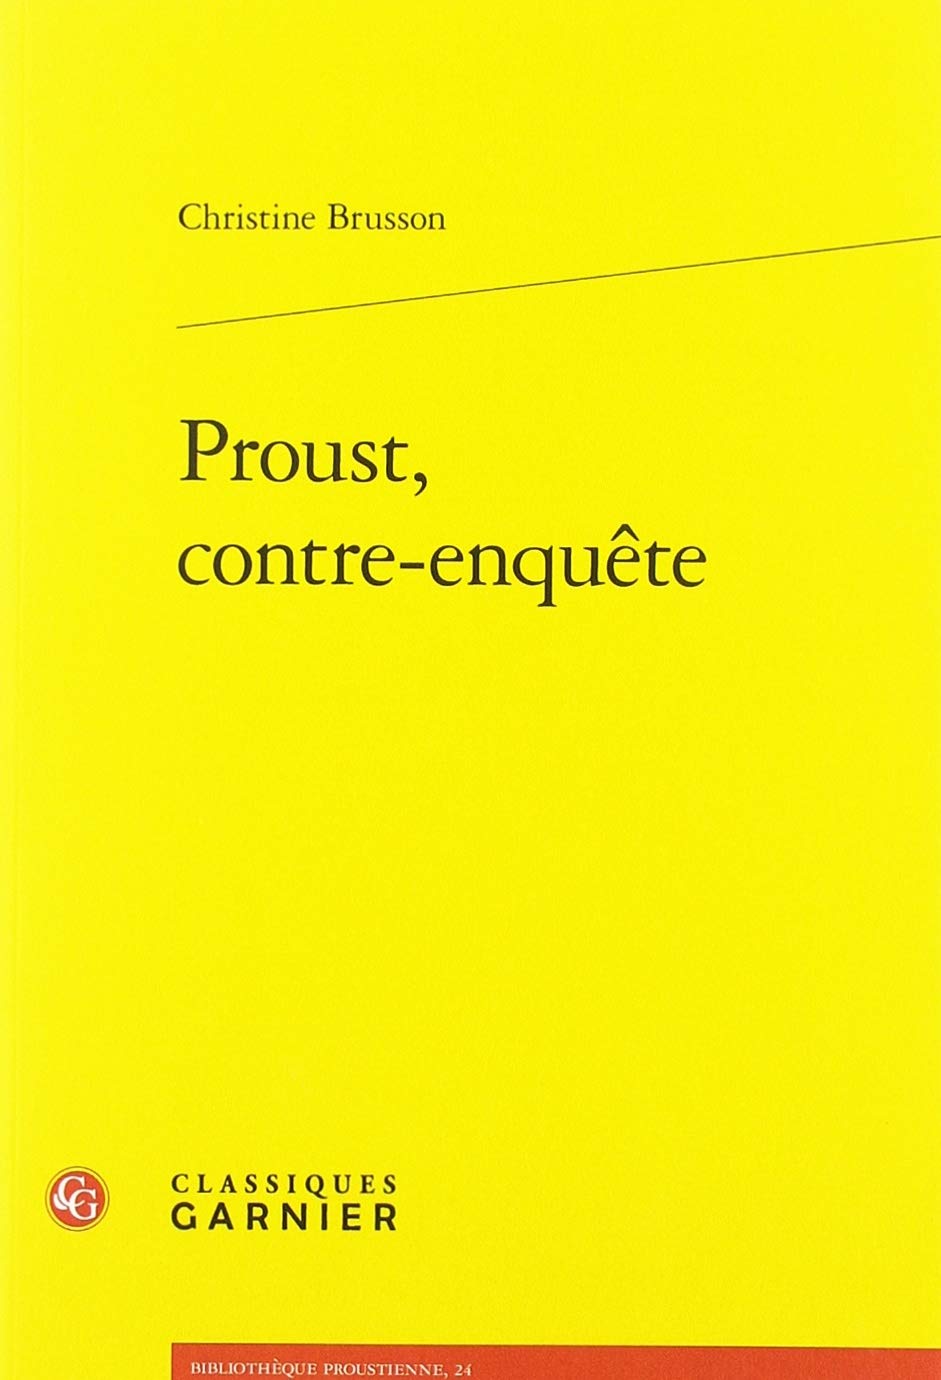 Proust, contre-enquete